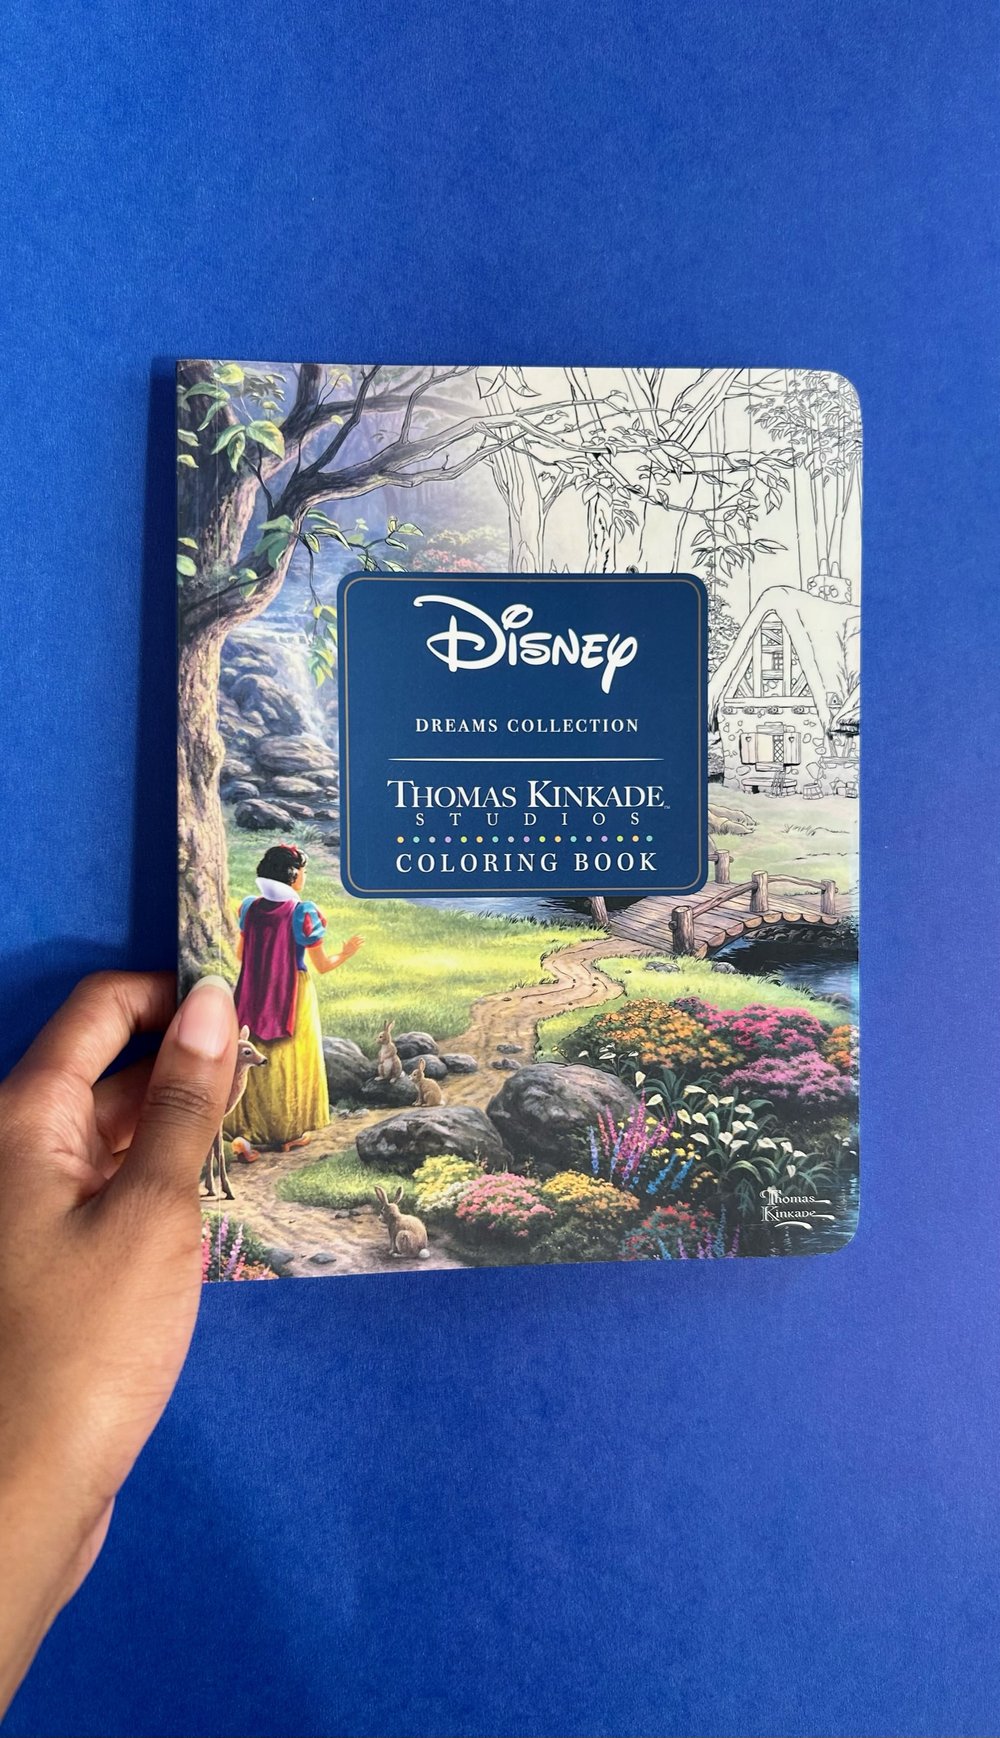 Disney Dreams Collection - Thomas Kinkade Studios Coloring Book